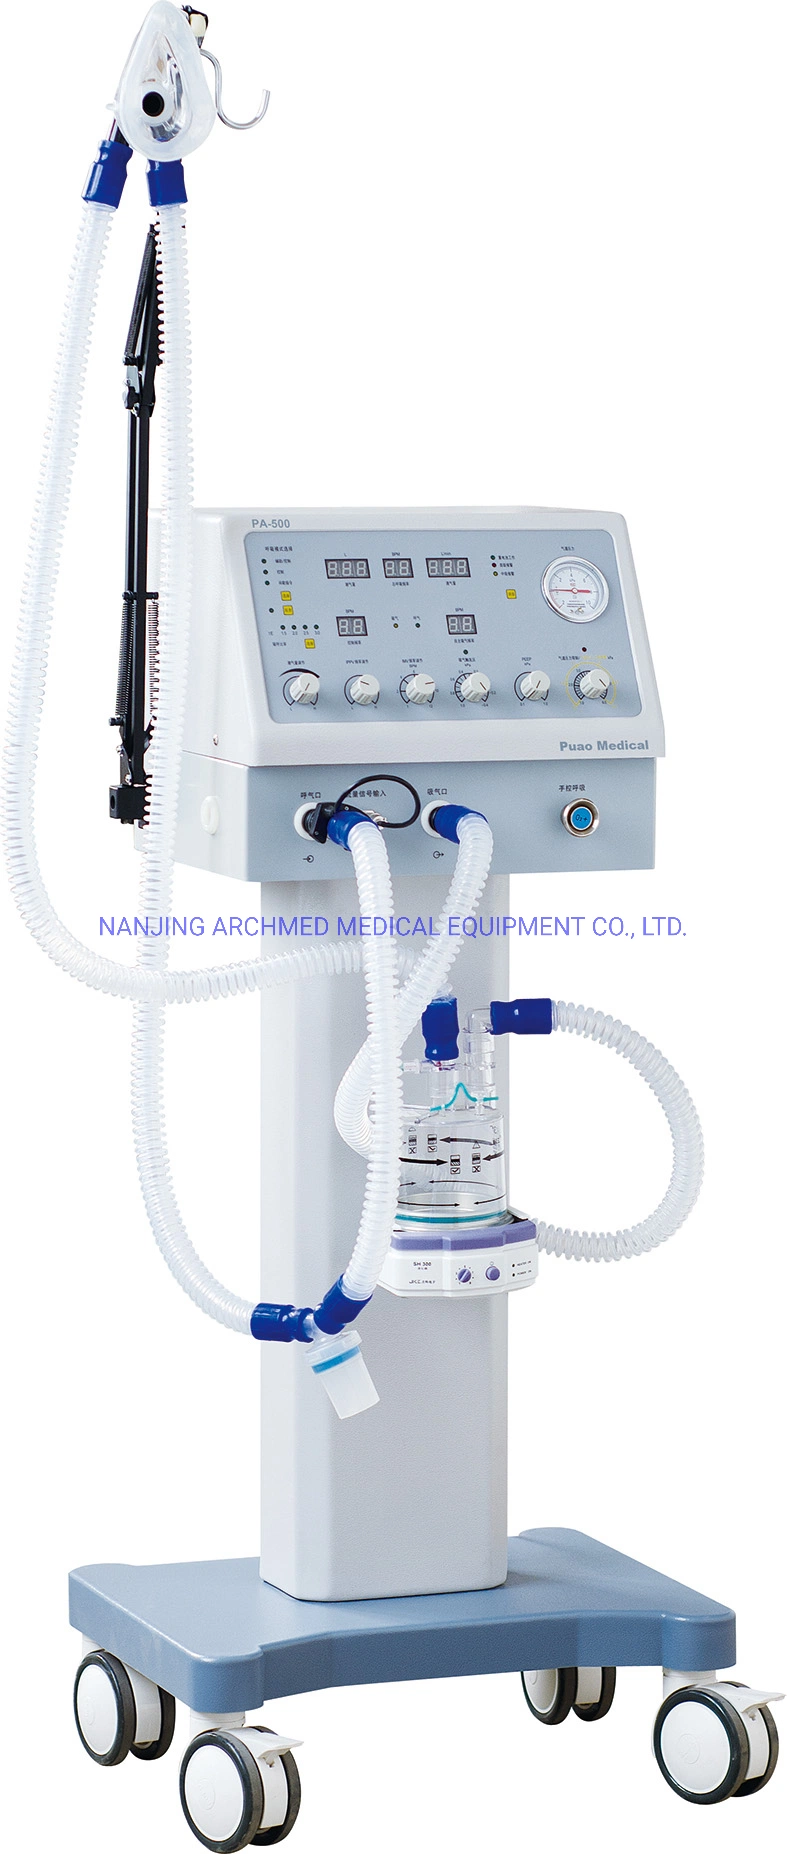 Equipo médico cirugía y anestesia equipo UCI de soporte de vida concentrador de oxígeno de la unidad de ventilador de aspiración